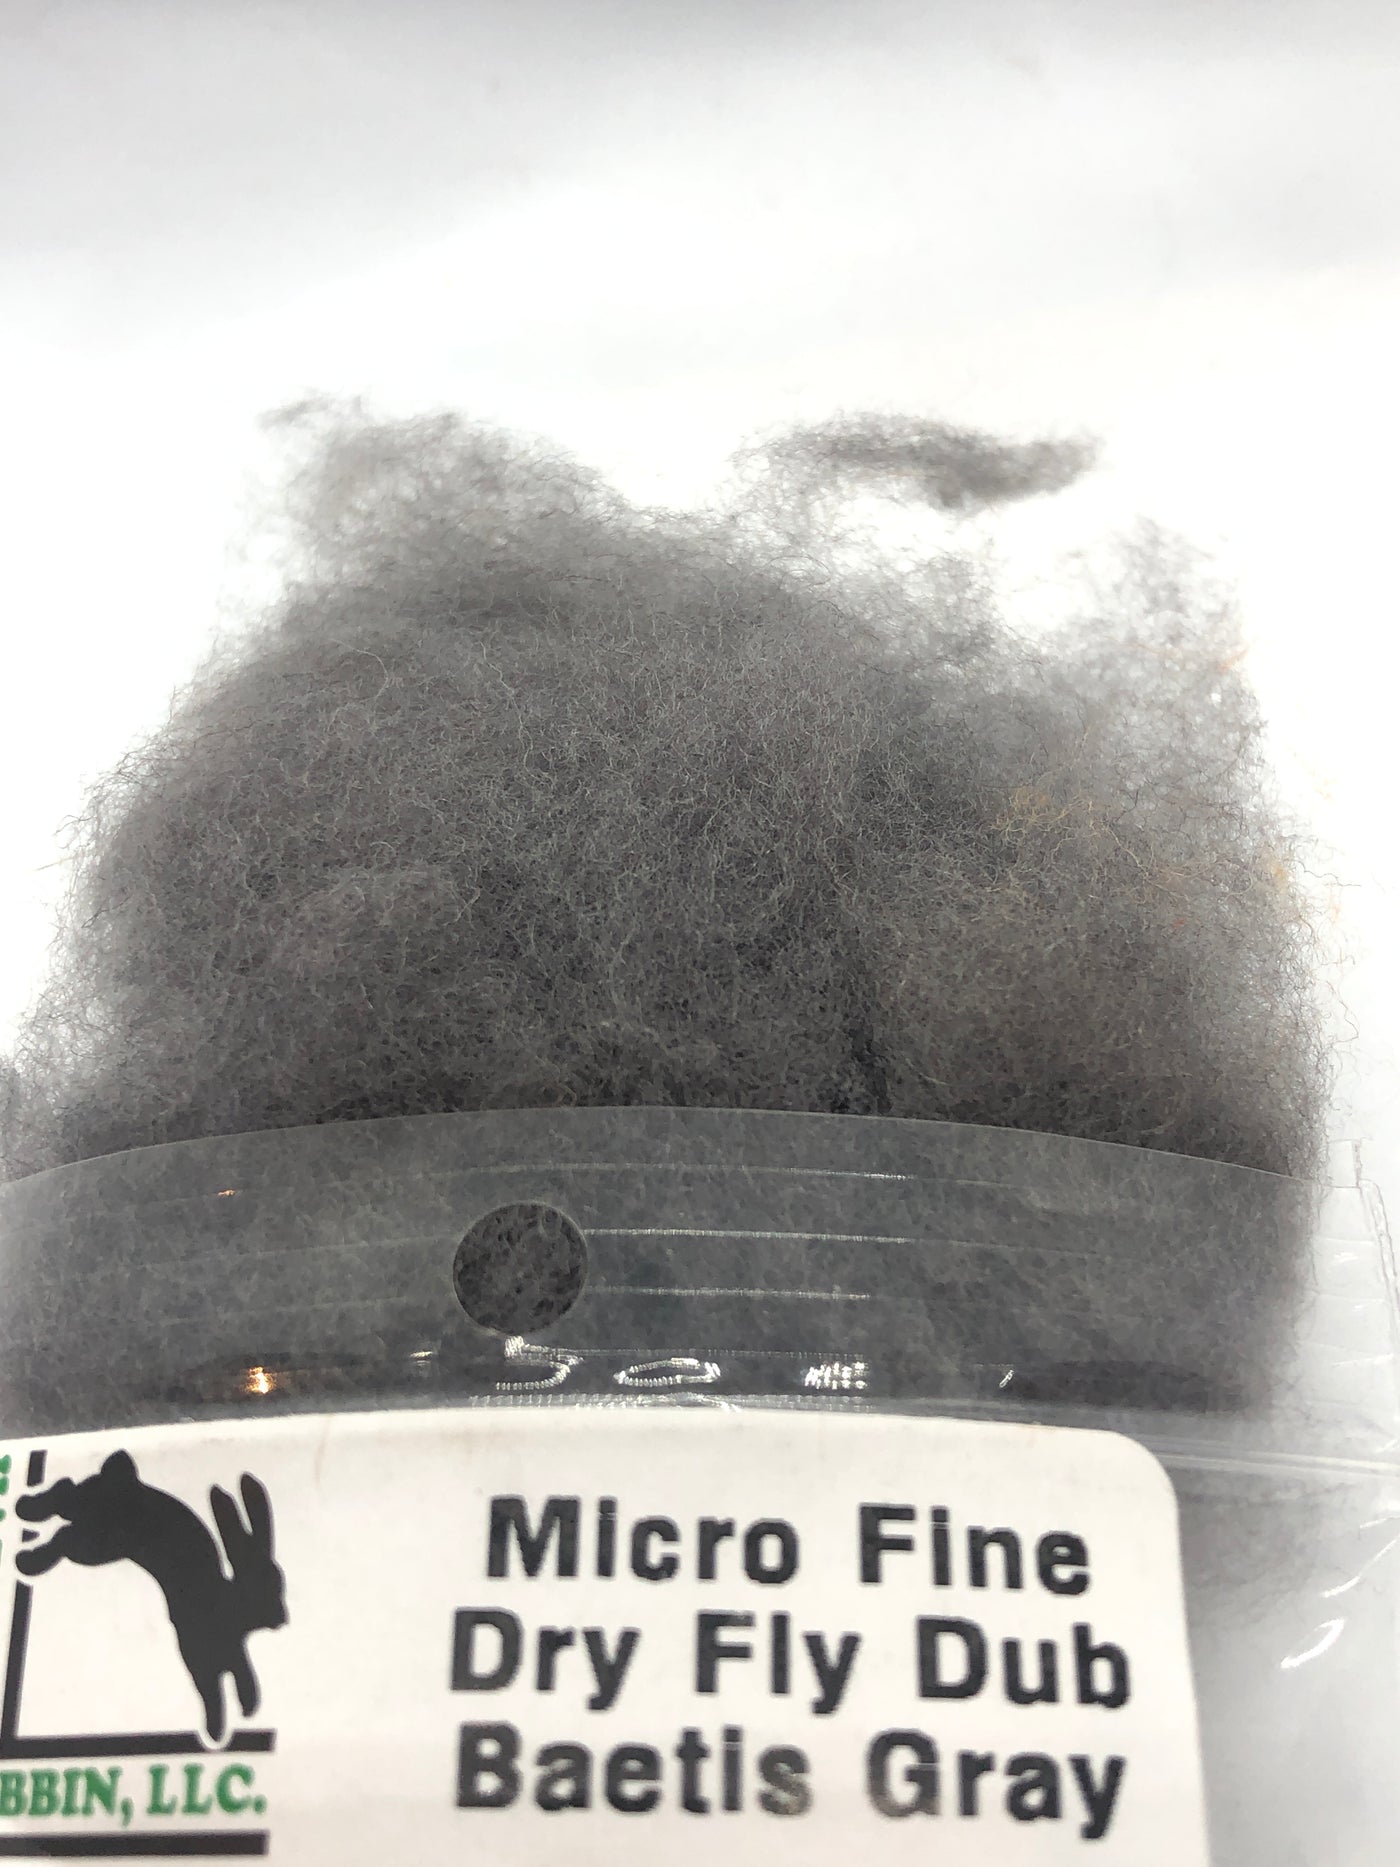 Hareline Micro Fine Dry Fly Dub